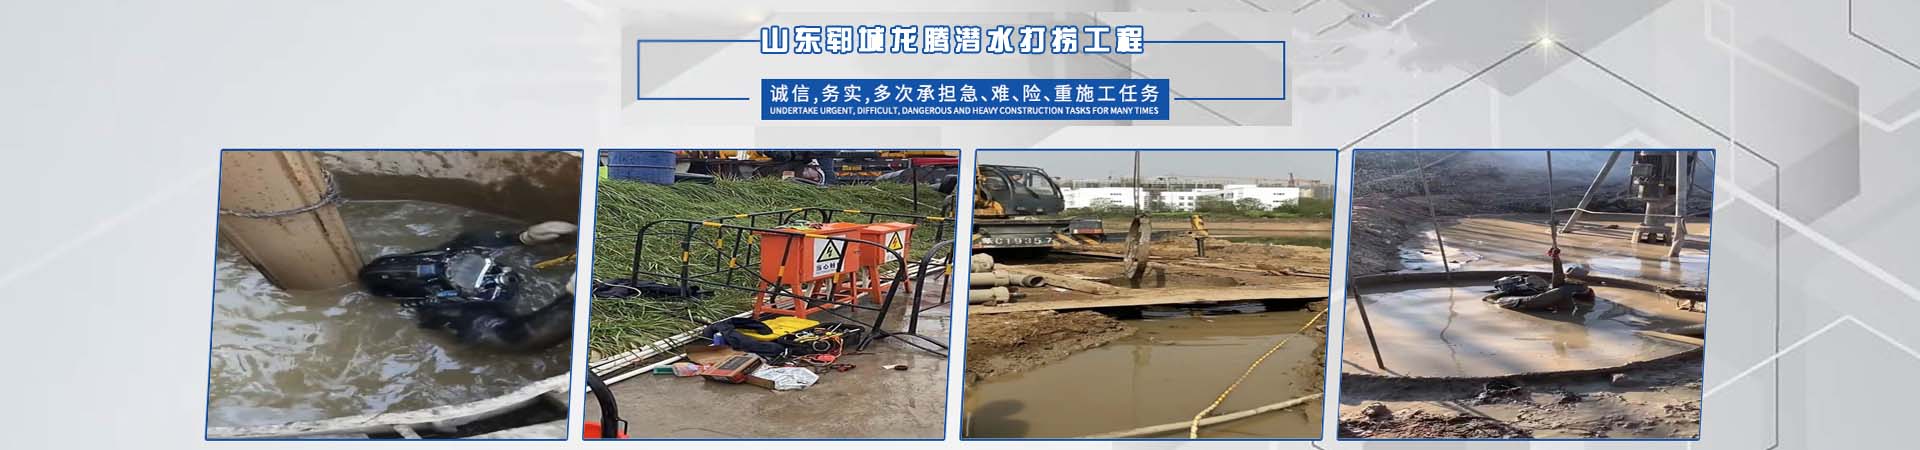 市政工程管道疏通、云南本地市政工程管道疏通、云南、云南市政工程管道疏通